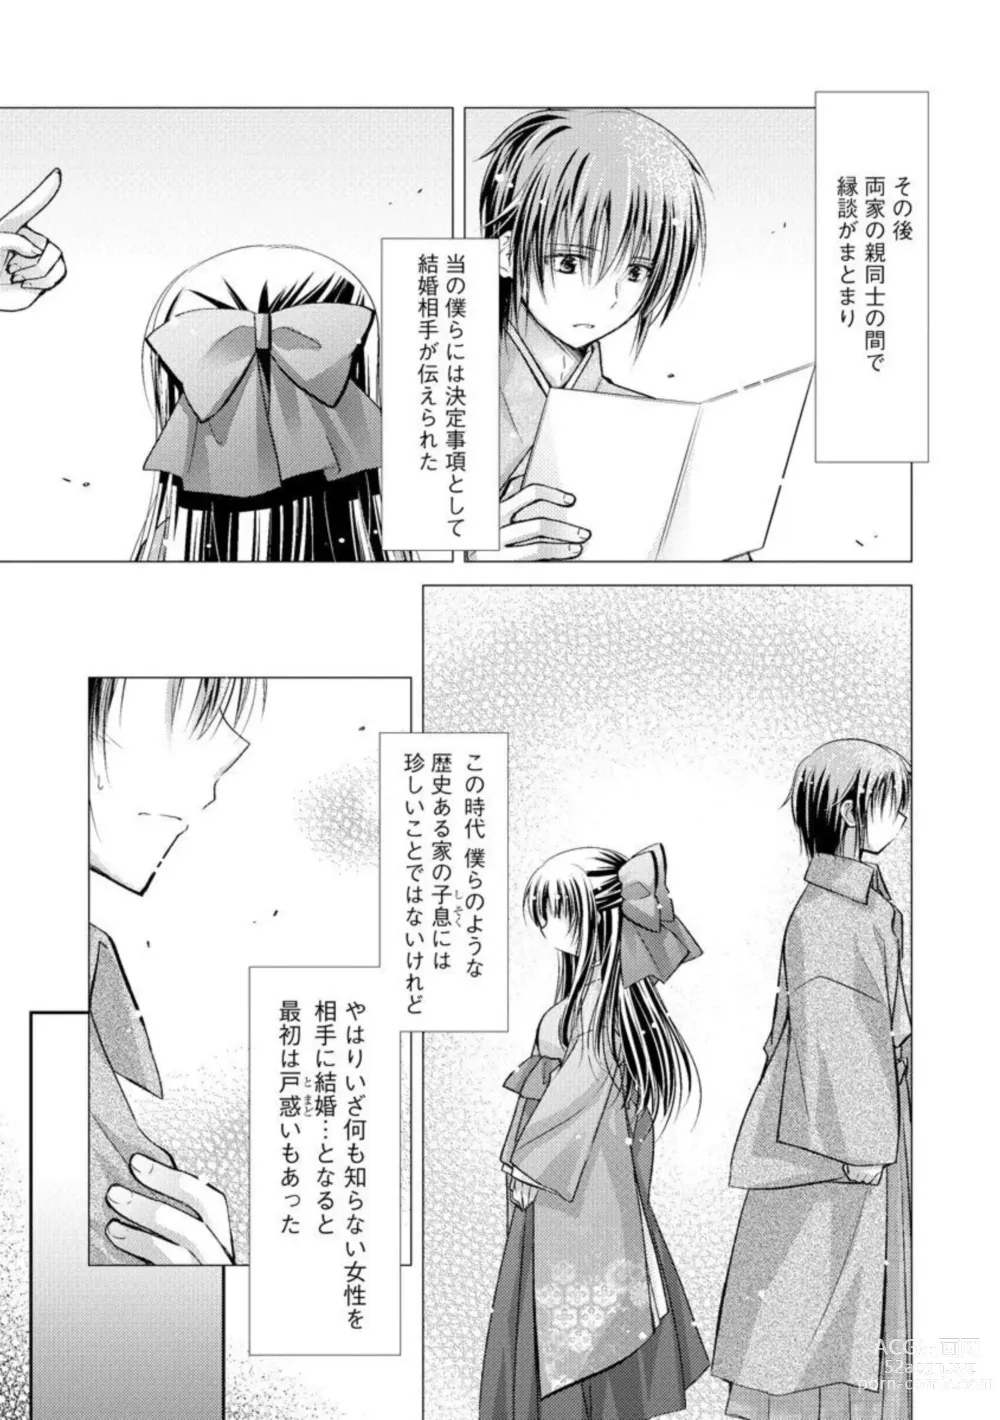 Page 5 of manga Aishin Retoroshizumu 1